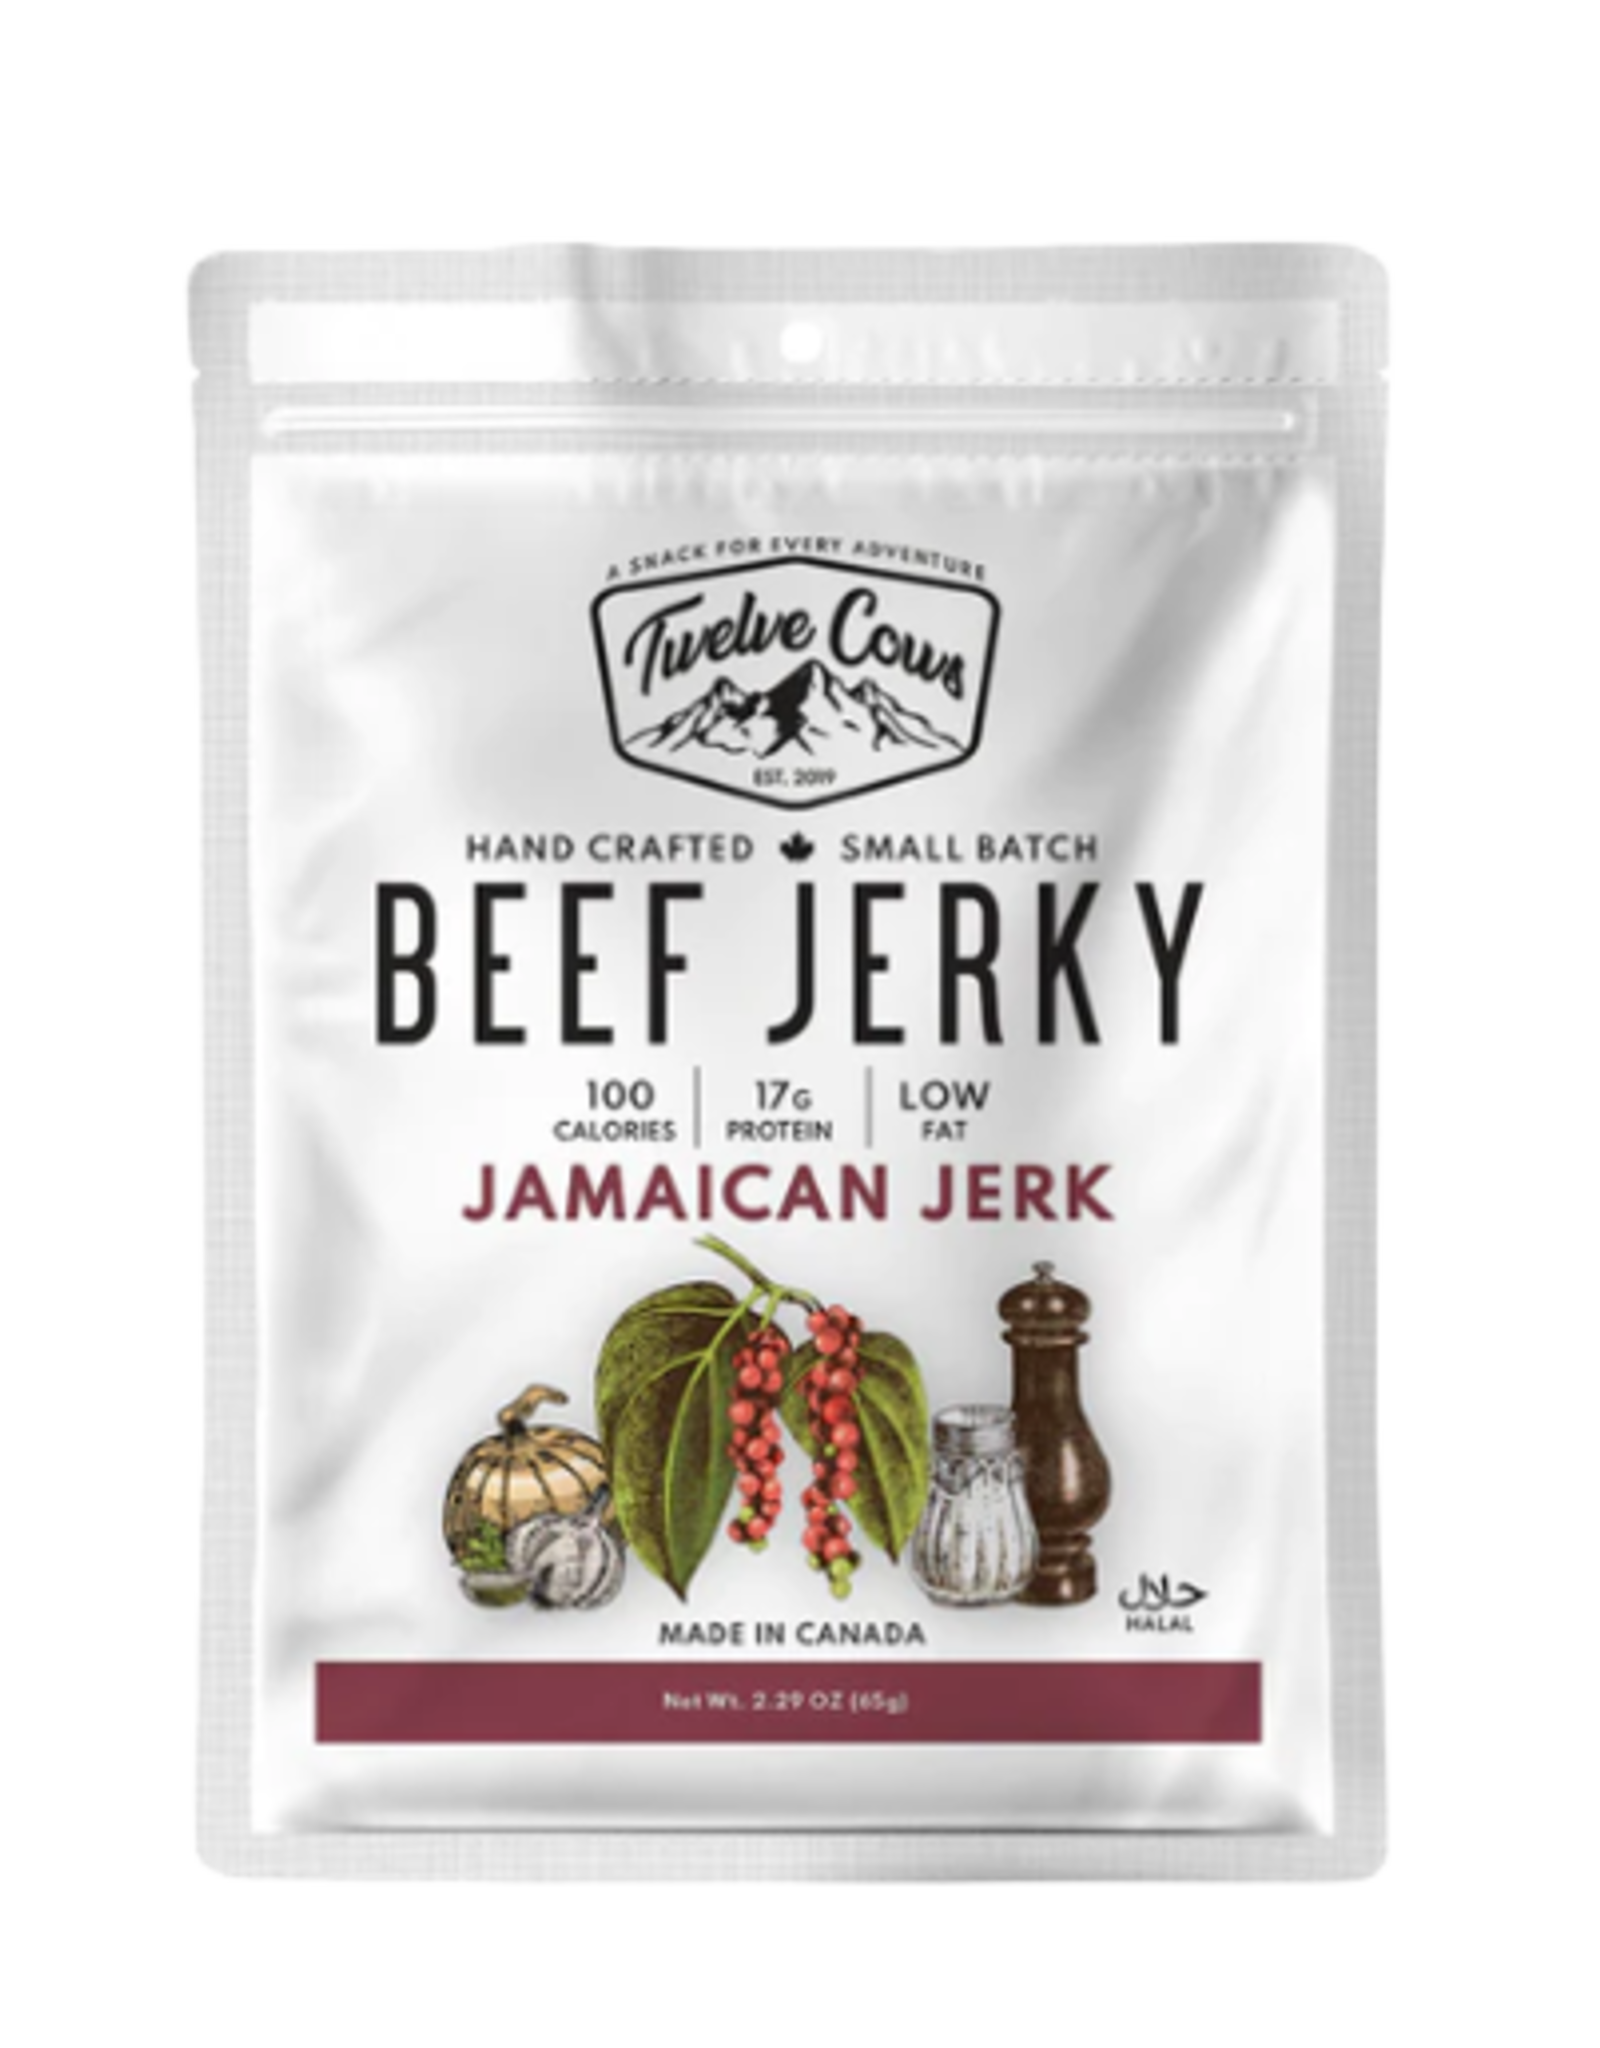 Twelve Cows Beef Jerky - Jamaican Jerk